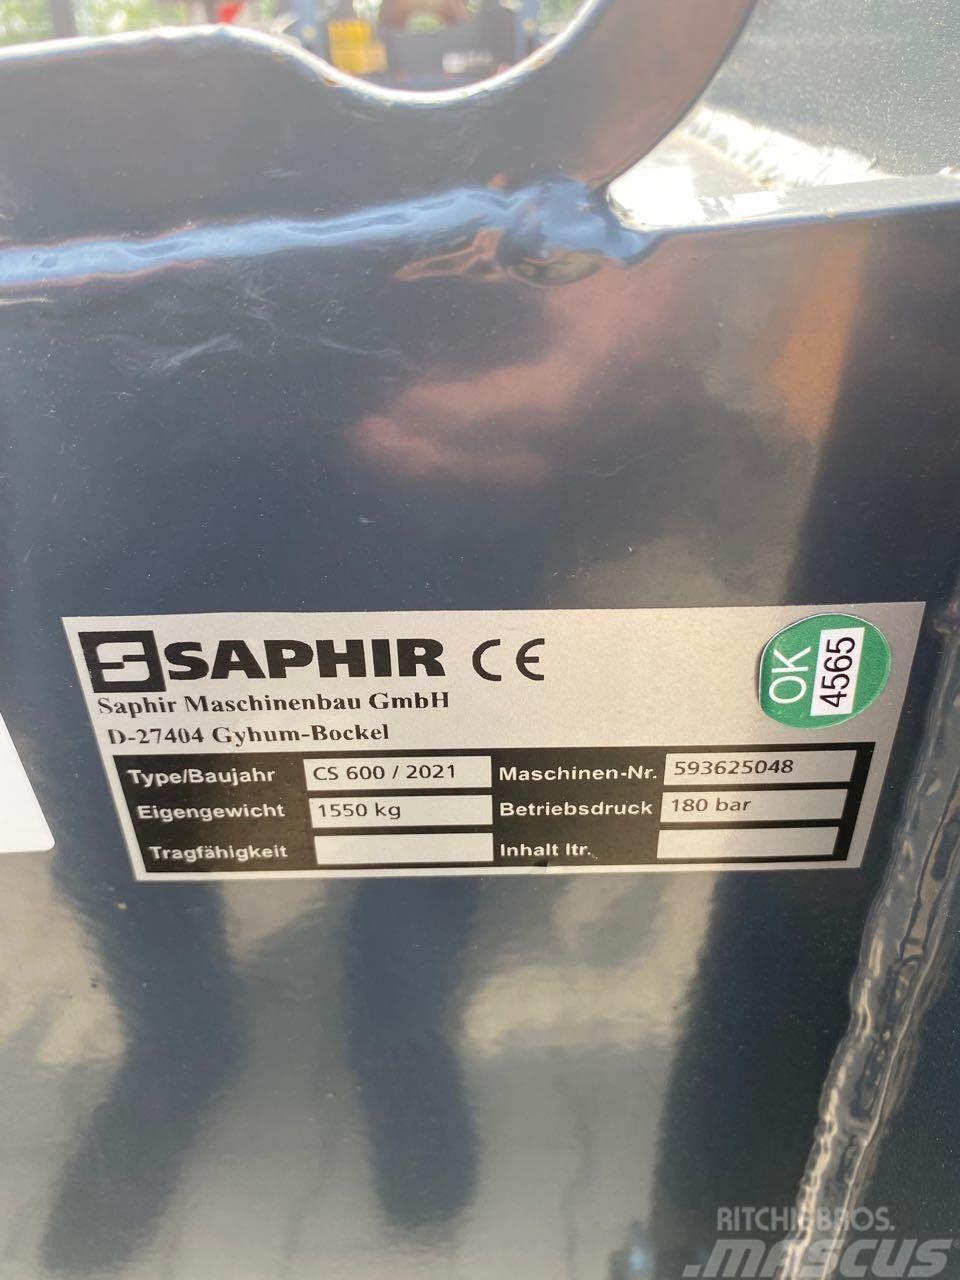 Saphir ClearStar 600 Altre macchine e accessori per l'aratura